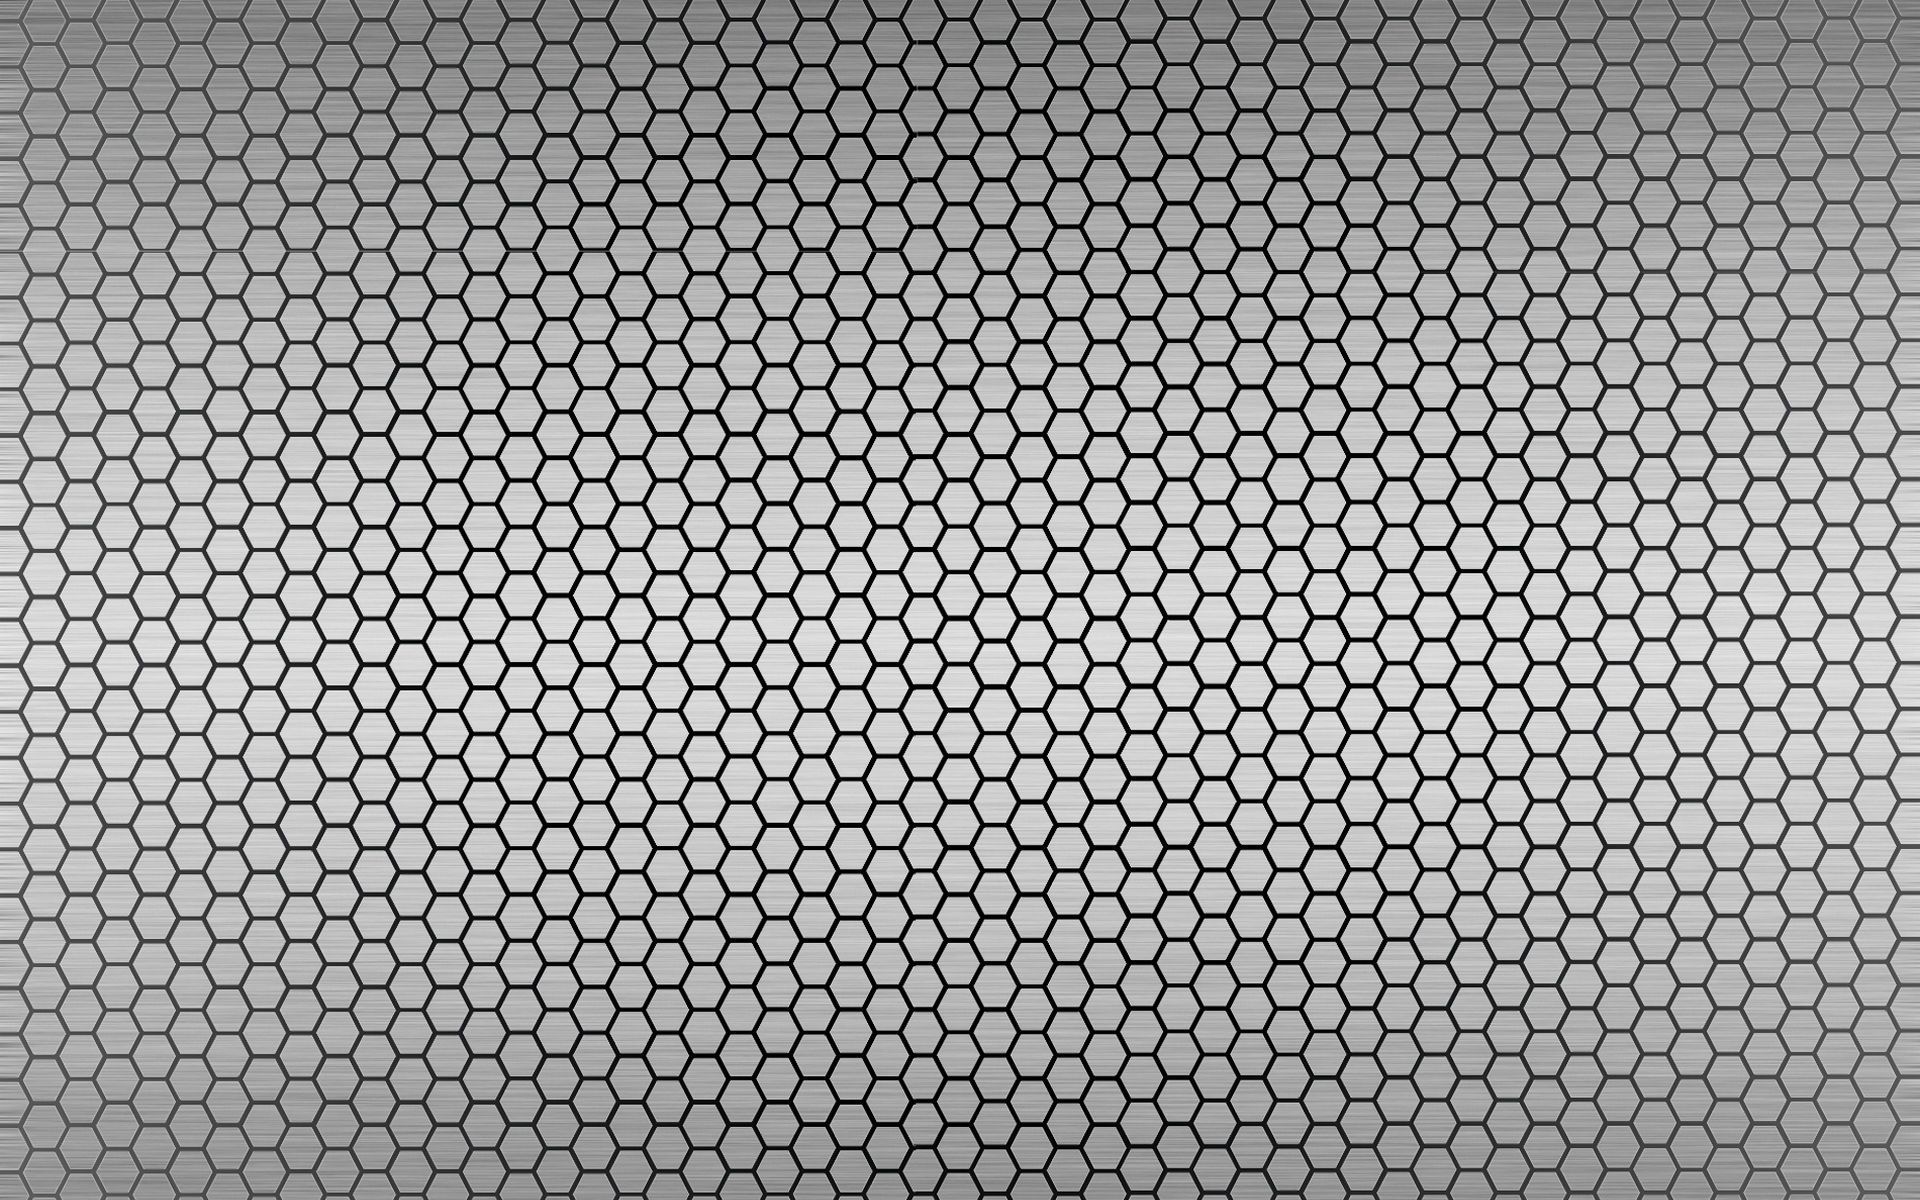 Honeyb Pattern Widescreen Wallpaper